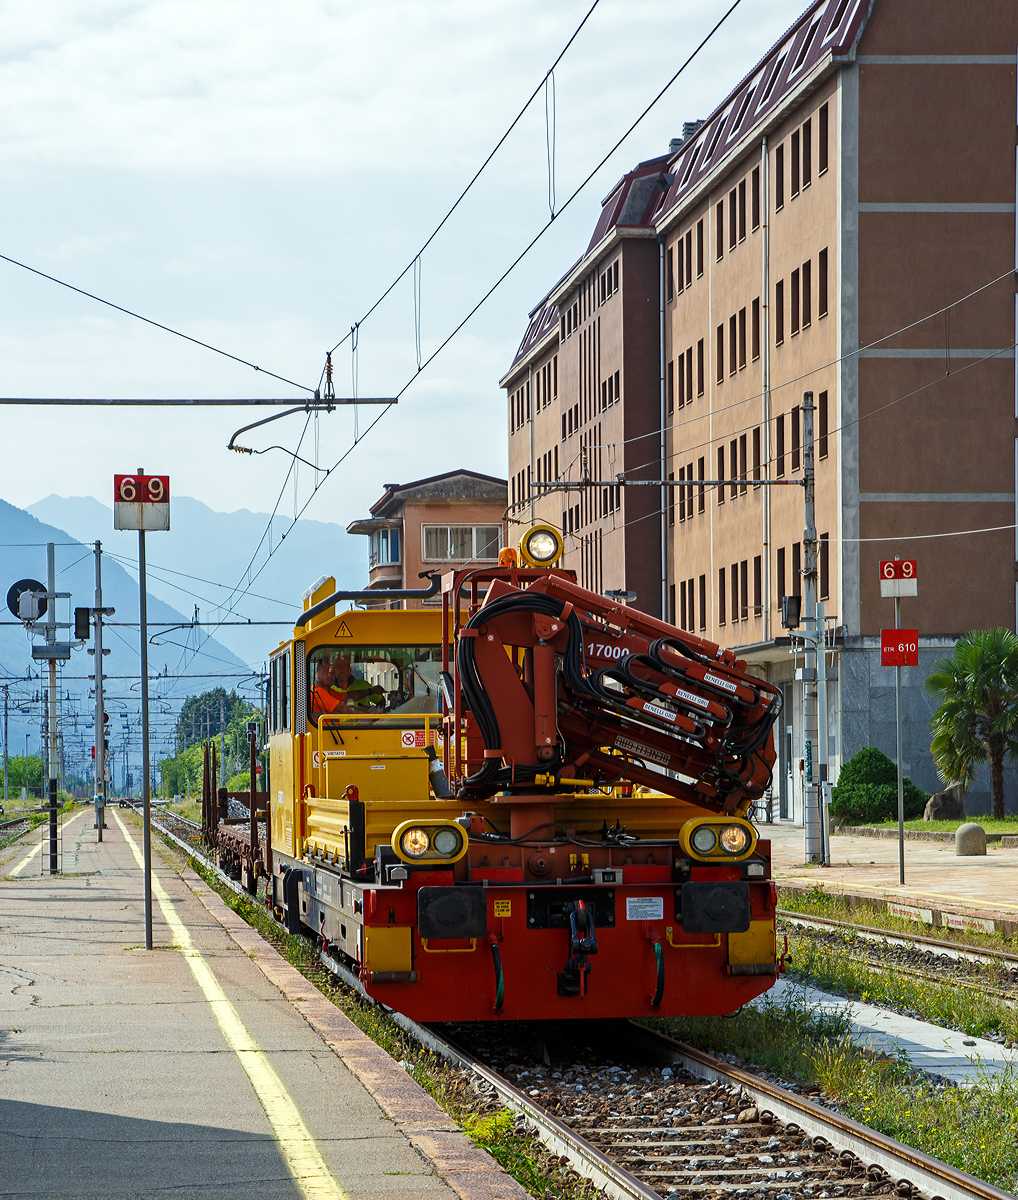 Das Italienische MerMec Gleisarbeitsfahrzeug IT-RFI 152 194-2 der RFI (Rete Ferroviaria Italiana) fährt am 08.09.2021 mit einem vierachsigen Flachwagen durch den Bahnhof Domodossola in Richtung Norden.